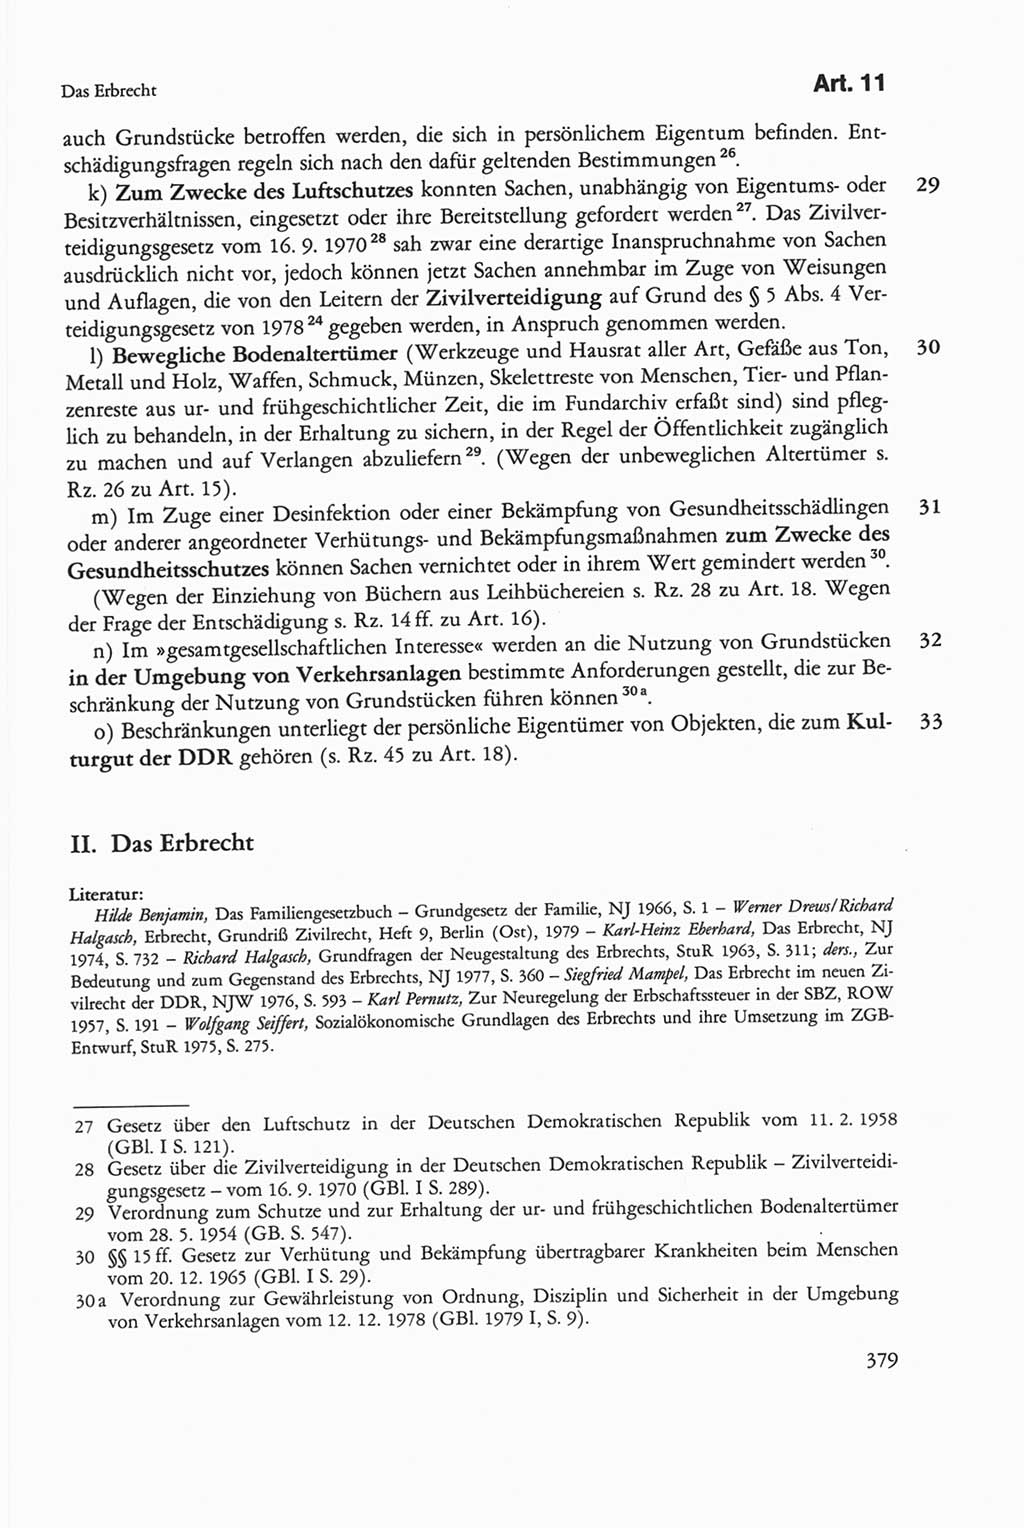 Die sozialistische Verfassung der Deutschen Demokratischen Republik (DDR), Kommentar mit einem Nachtrag 1997, Seite 379 (Soz. Verf. DDR Komm. Nachtr. 1997, S. 379)